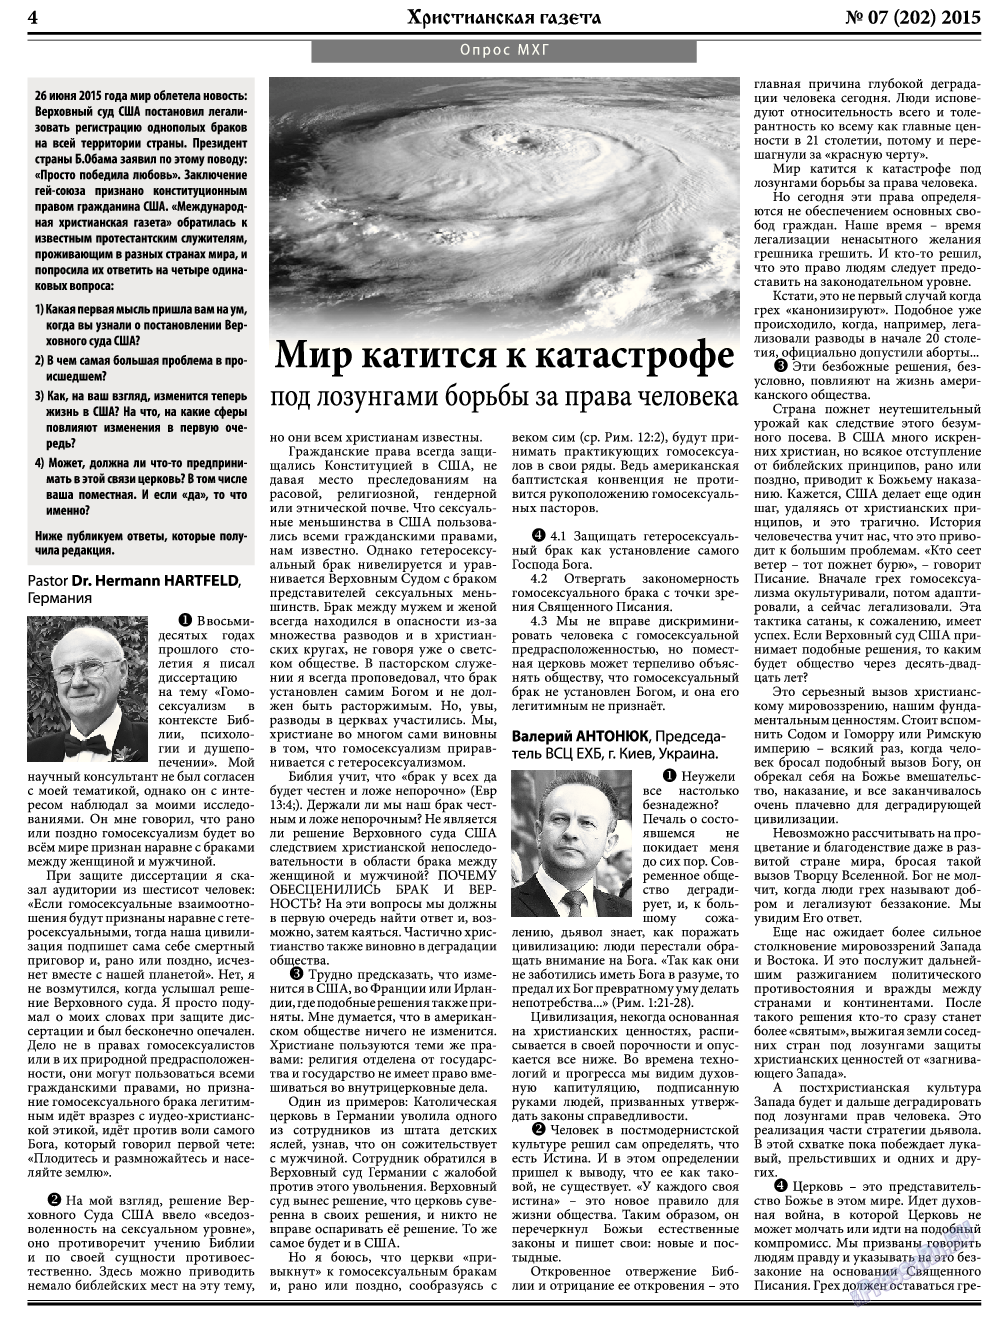 Христианская газета, газета. 2015 №7 стр.4